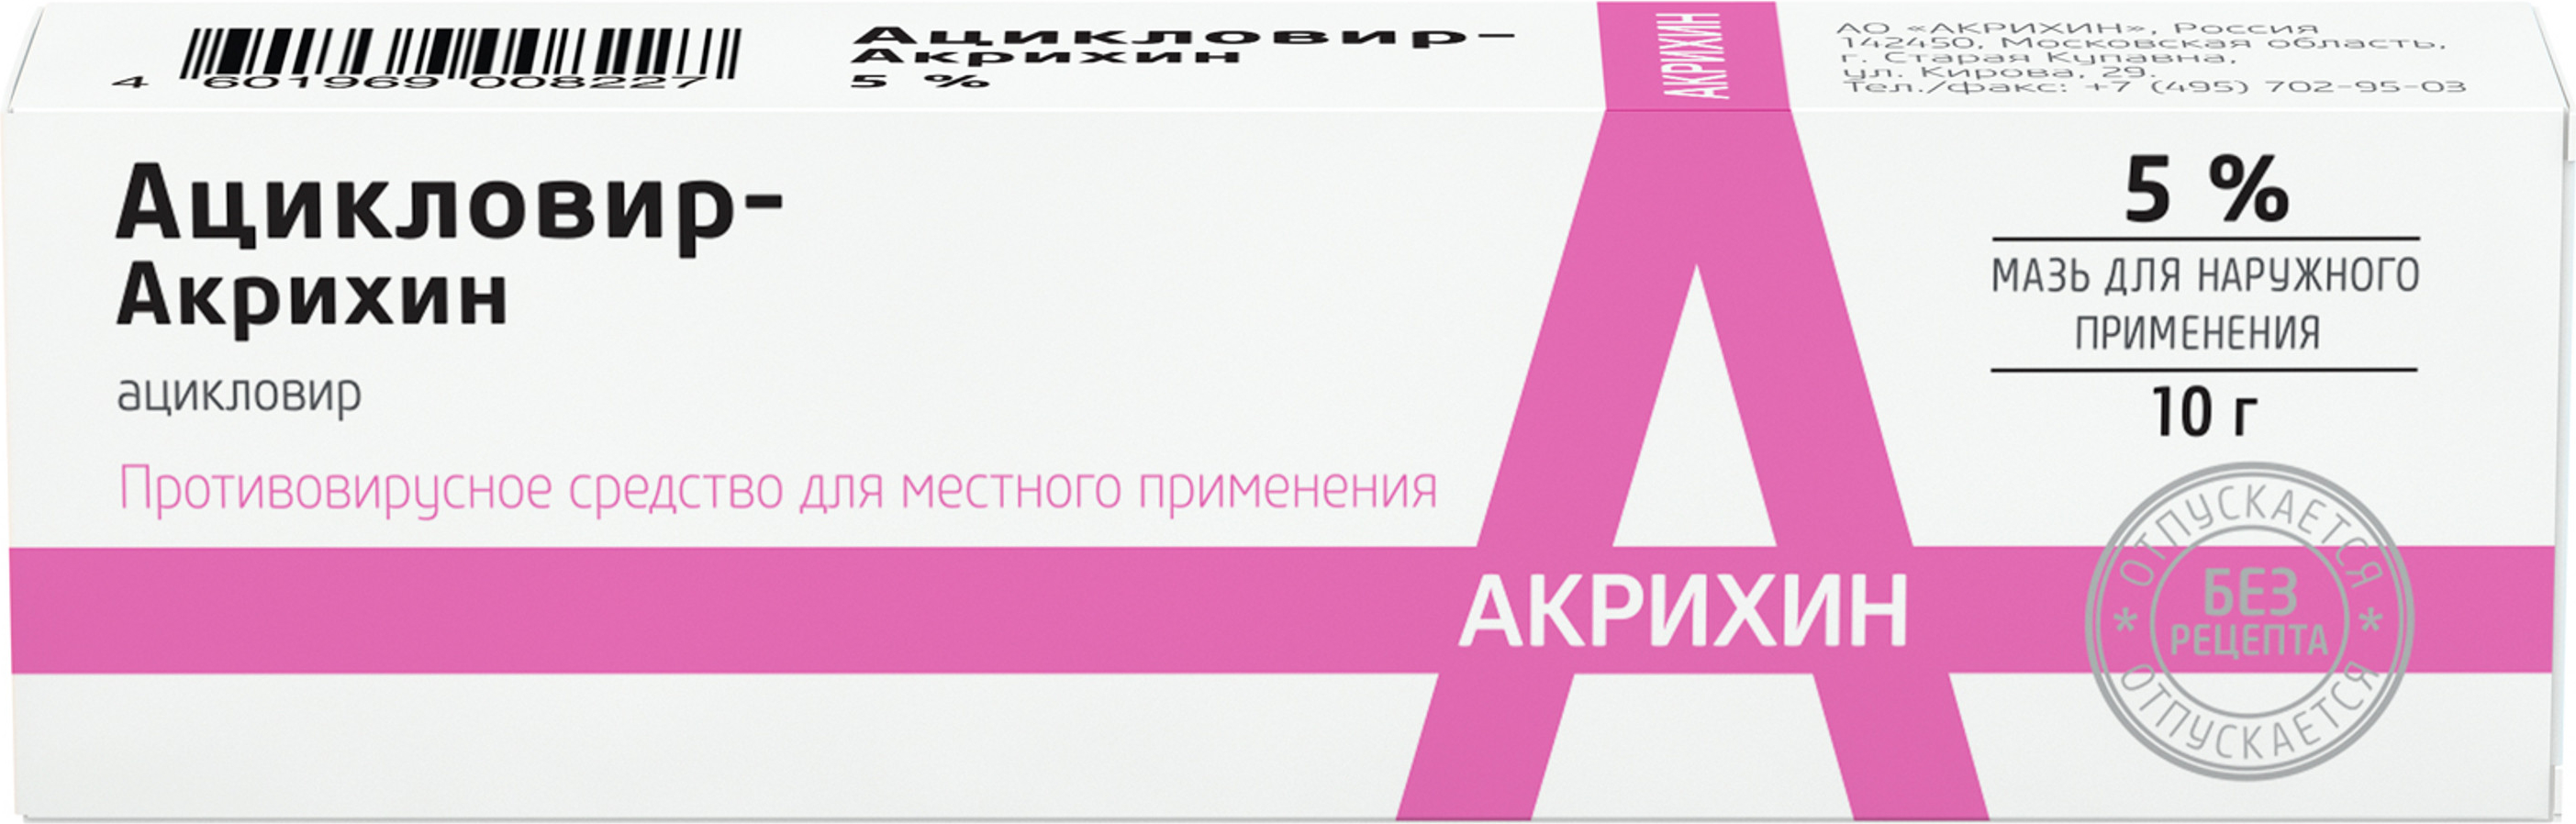 Ацикловир-Акрихин, мазь 5%, 10 г ацикловир акрихин мазь для наружного применения 5% 10г